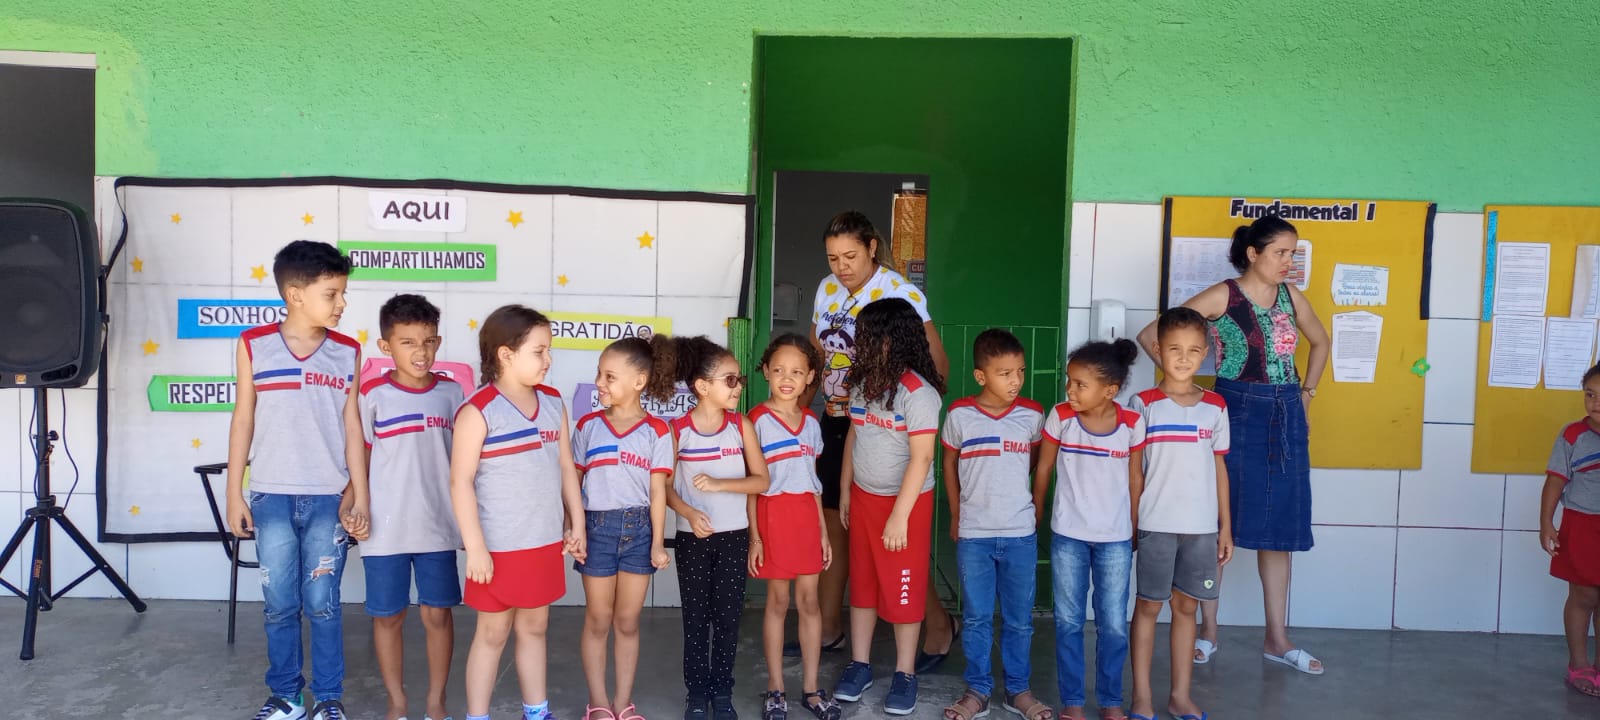 Prefeitura de Eunápolis reforça compromisso com a cultura da paz na rede municipal de ensino 36